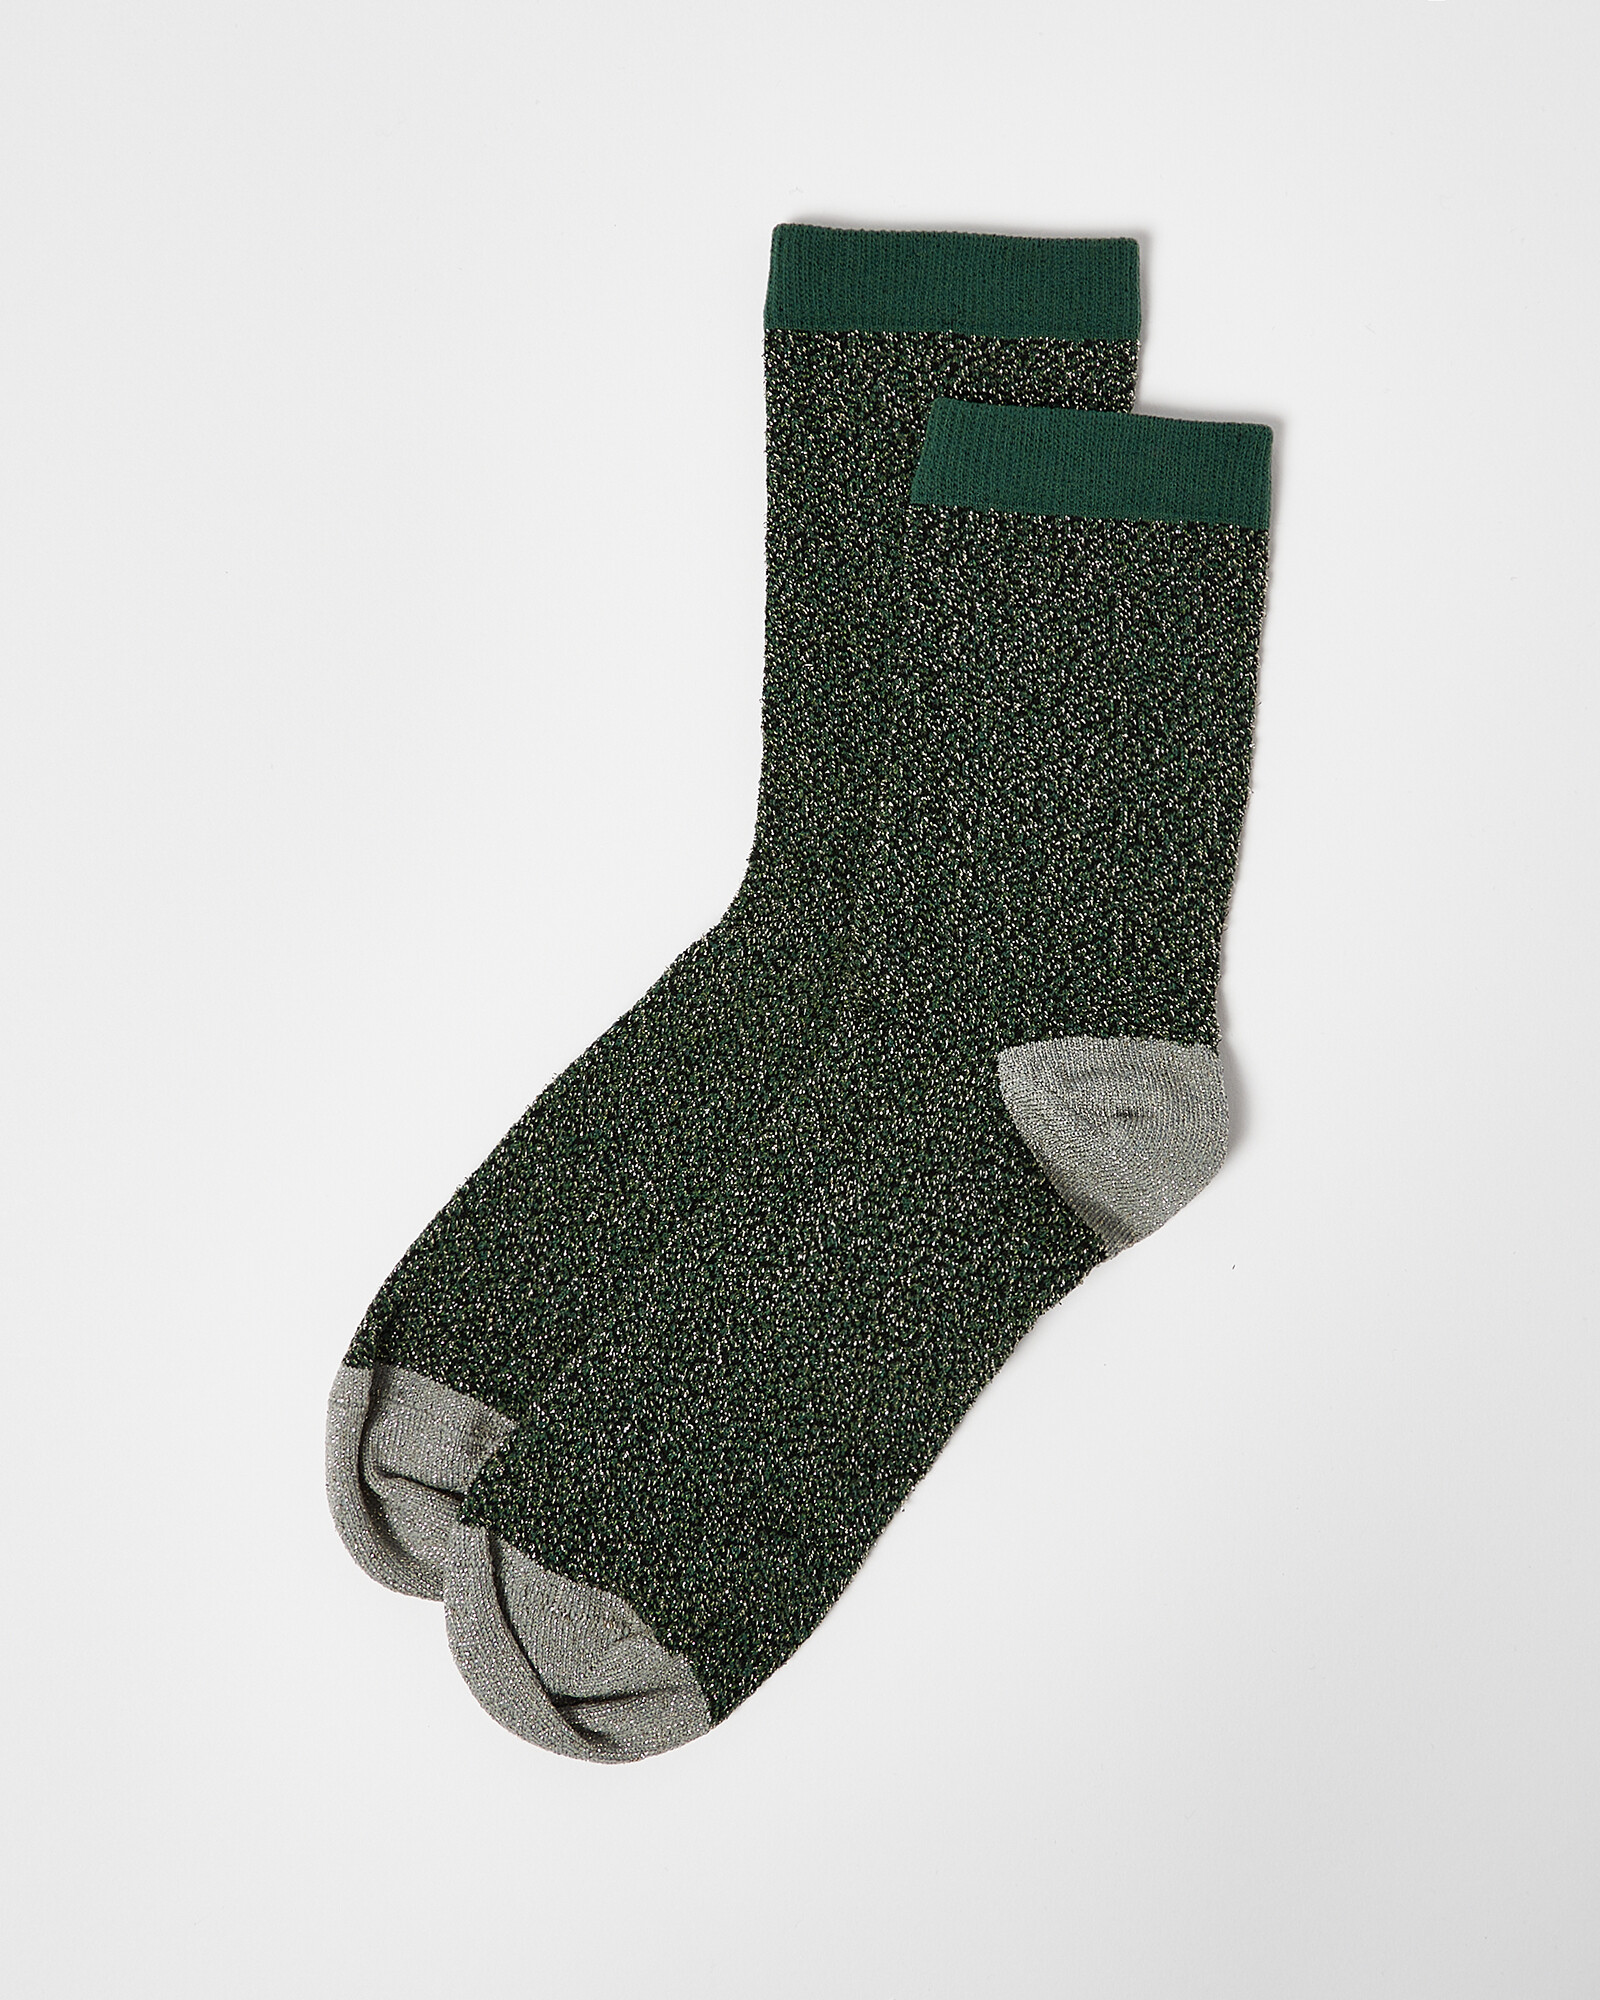 Glitter Green & Gold Ankle Socks | Oliver Bonas